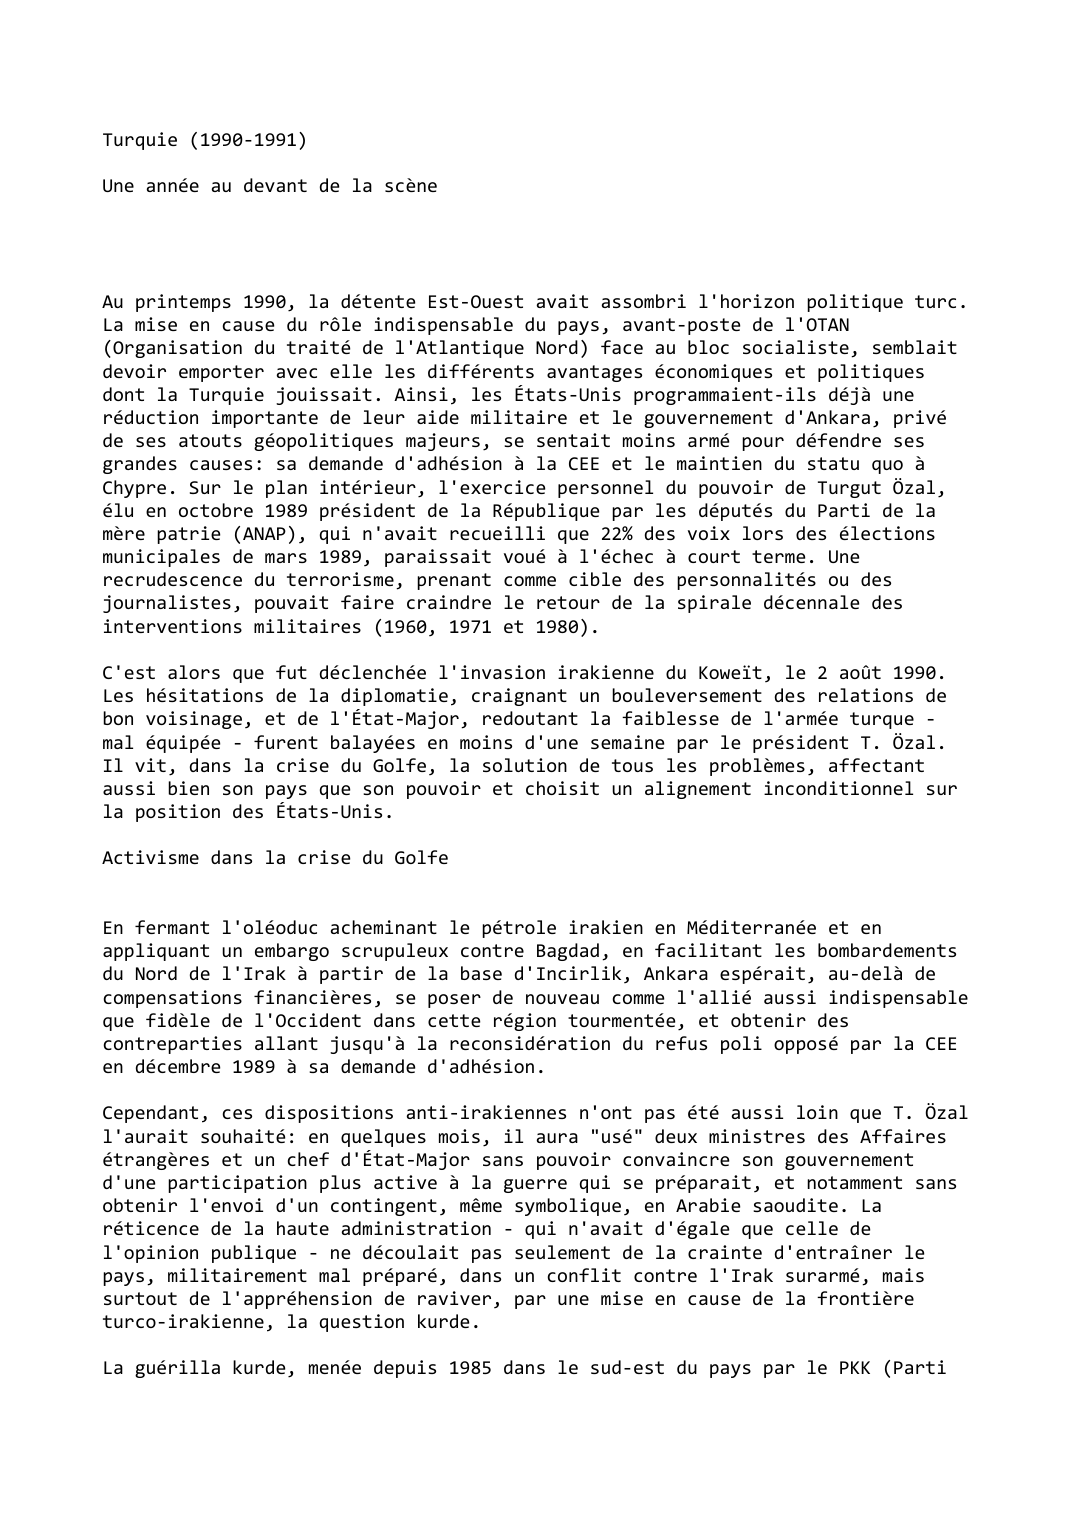 Prévisualisation du document Turquie (1990-1991)

Une année au devant de la scène